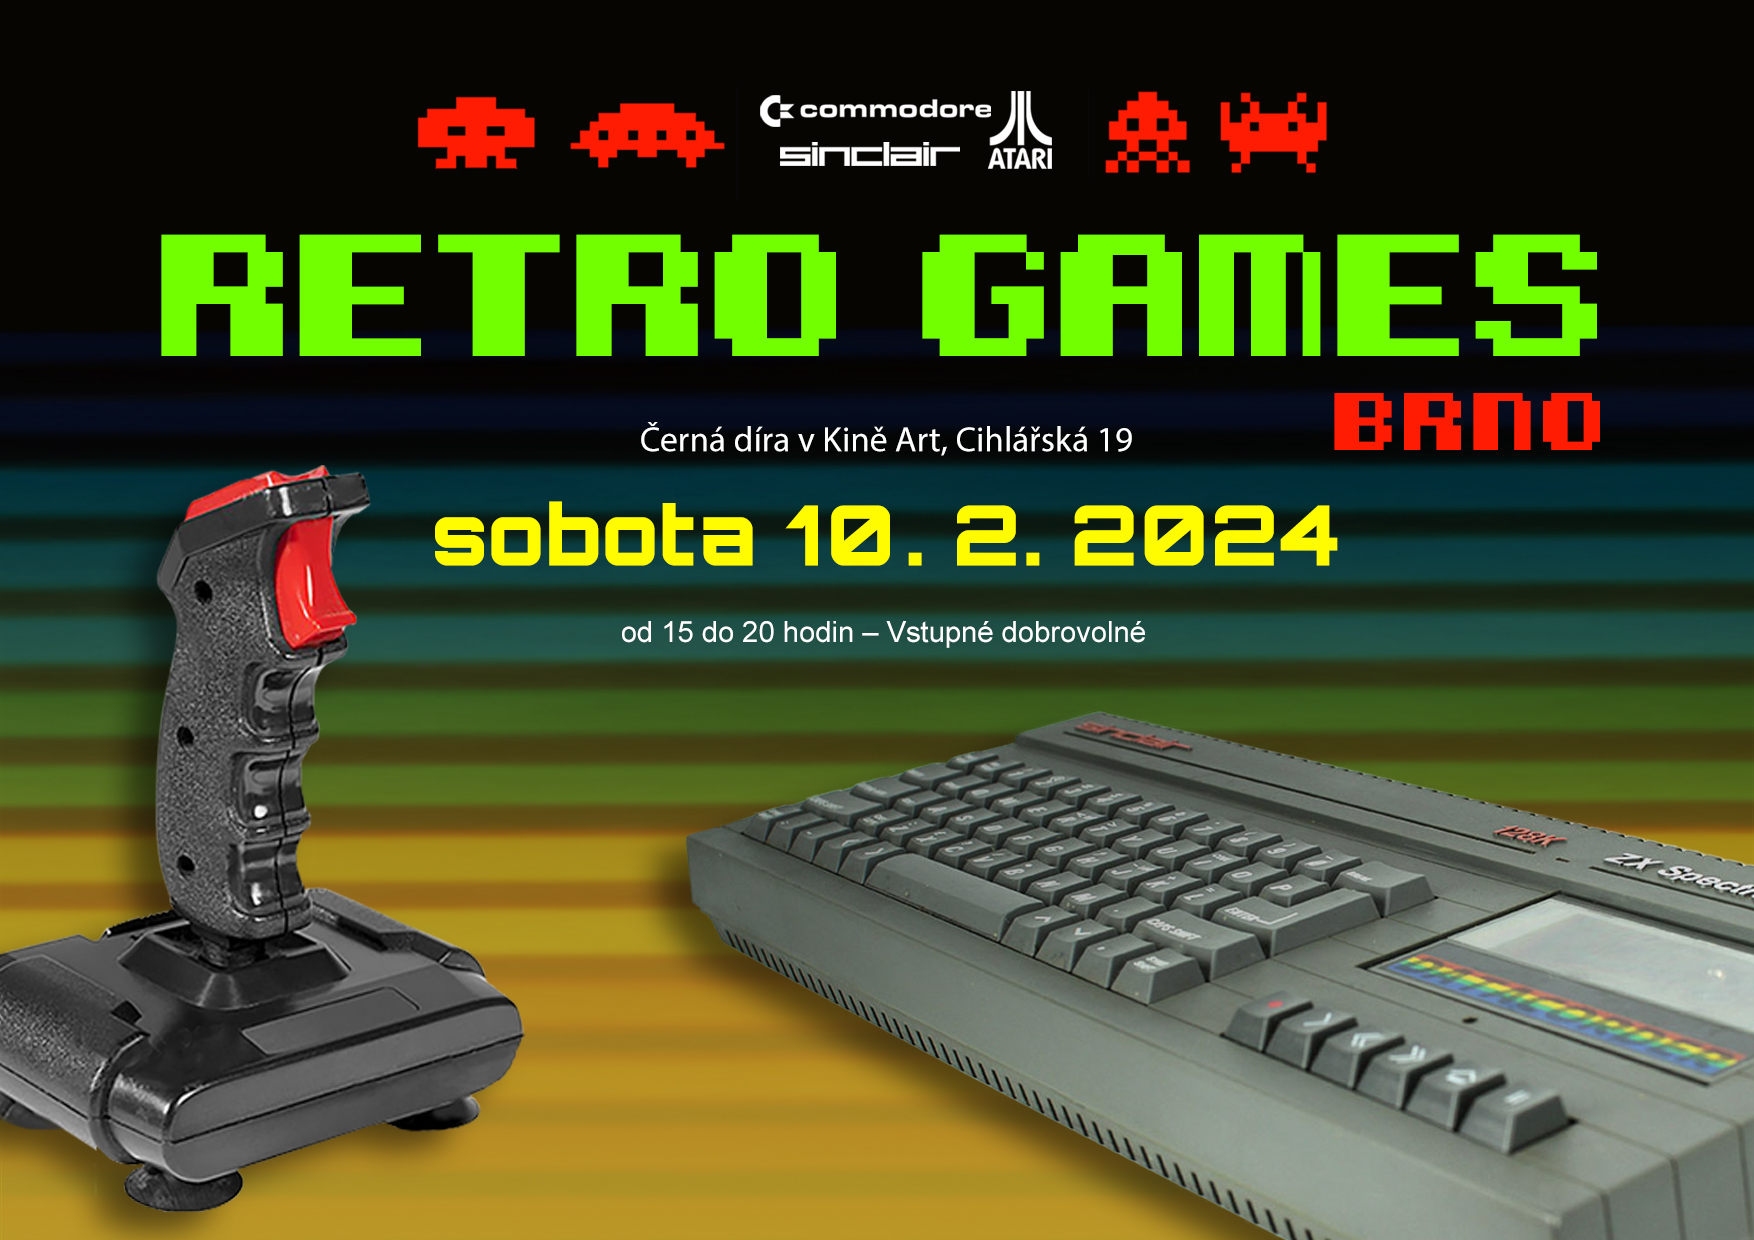 Retro Games Brno 10. 2. 2024